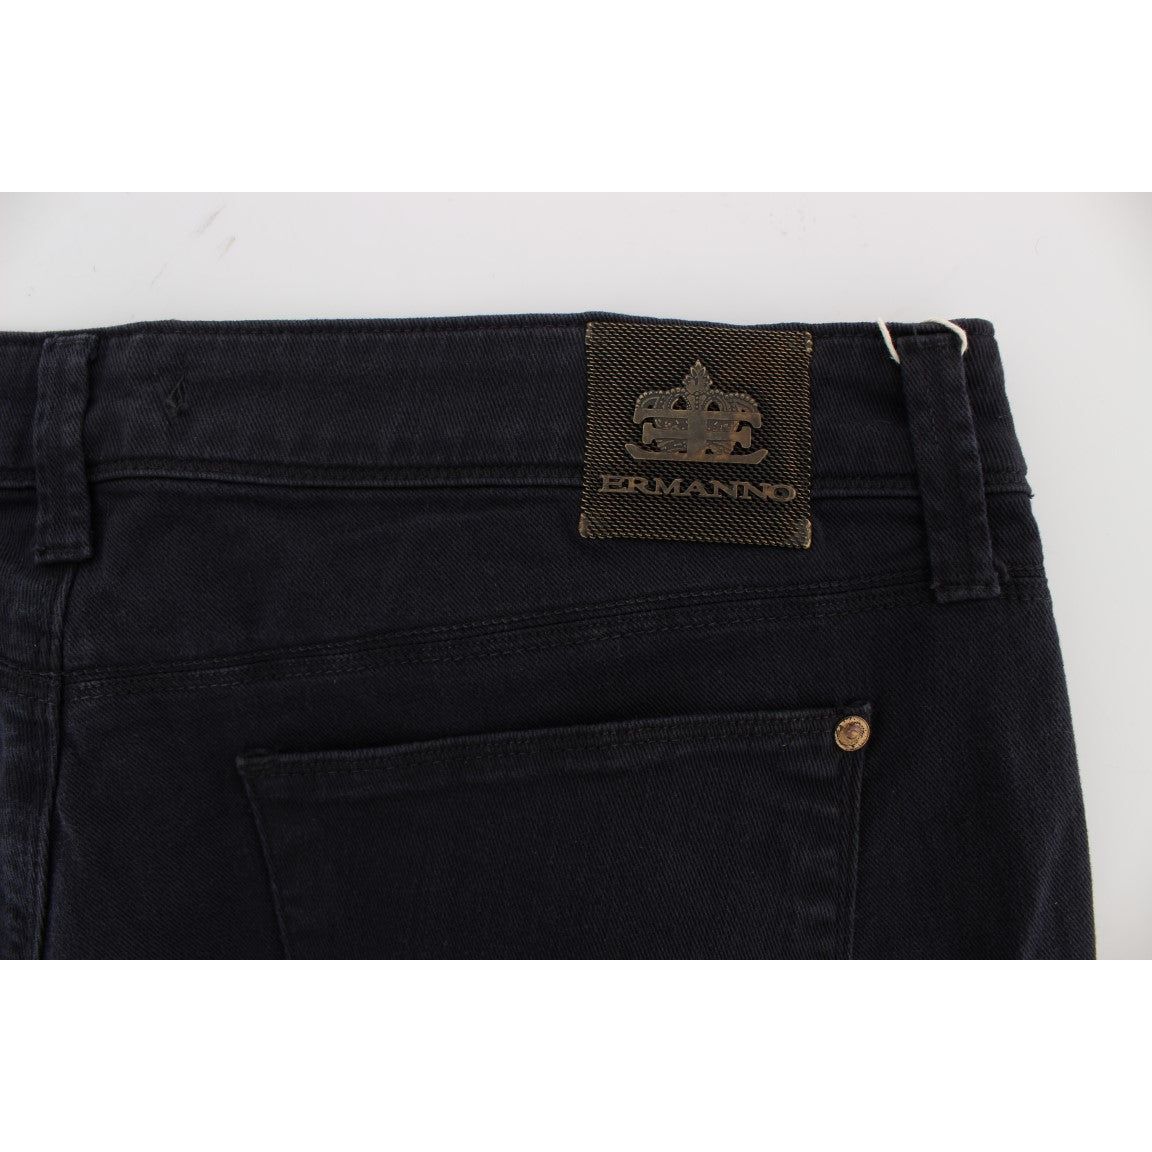 Ermanno Scervino Chic Casual Fit Italian Designer Jeans Jeans & Pants blue-cotton-blend-casual-fit-pants